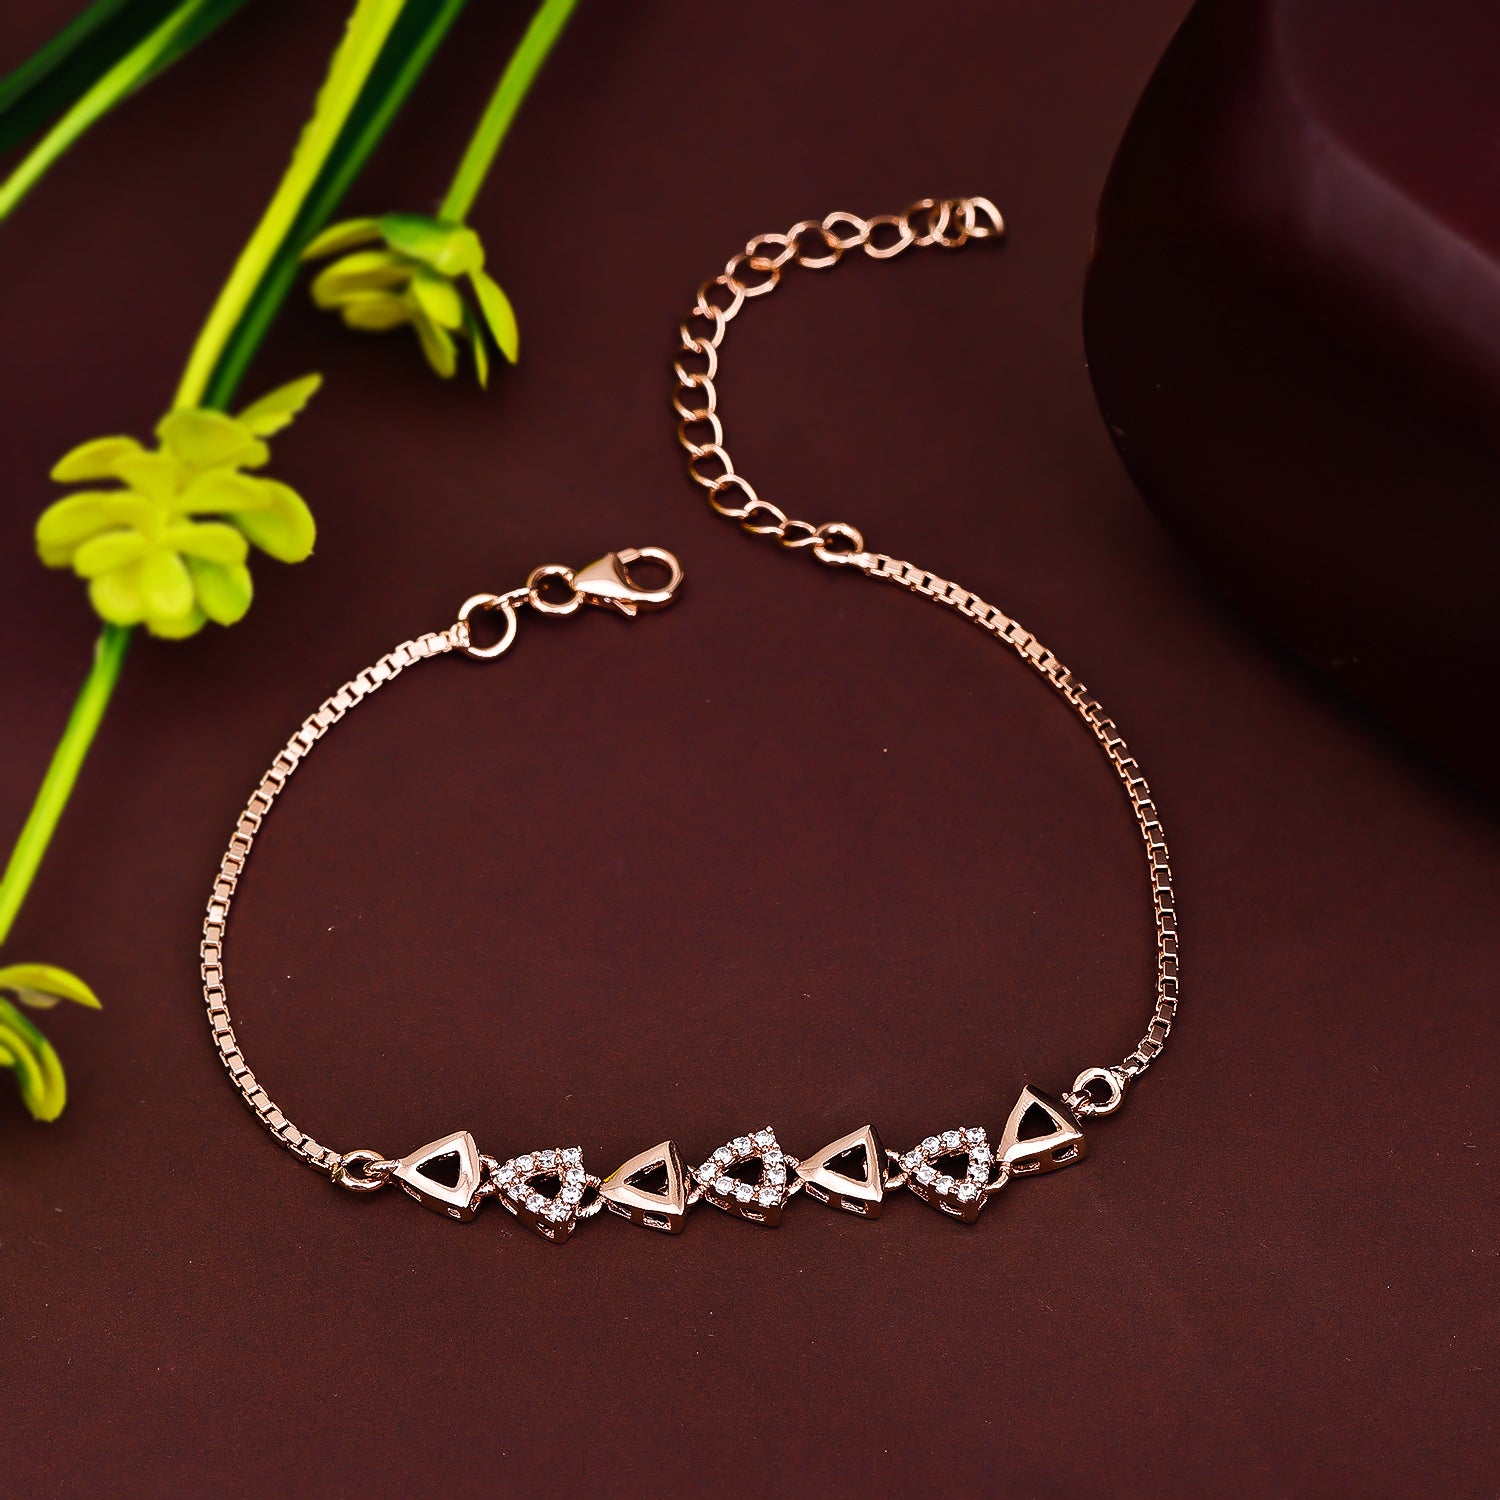 Buy quality 925 Silver Elegant Design Ladies Bracelet in Mumbai